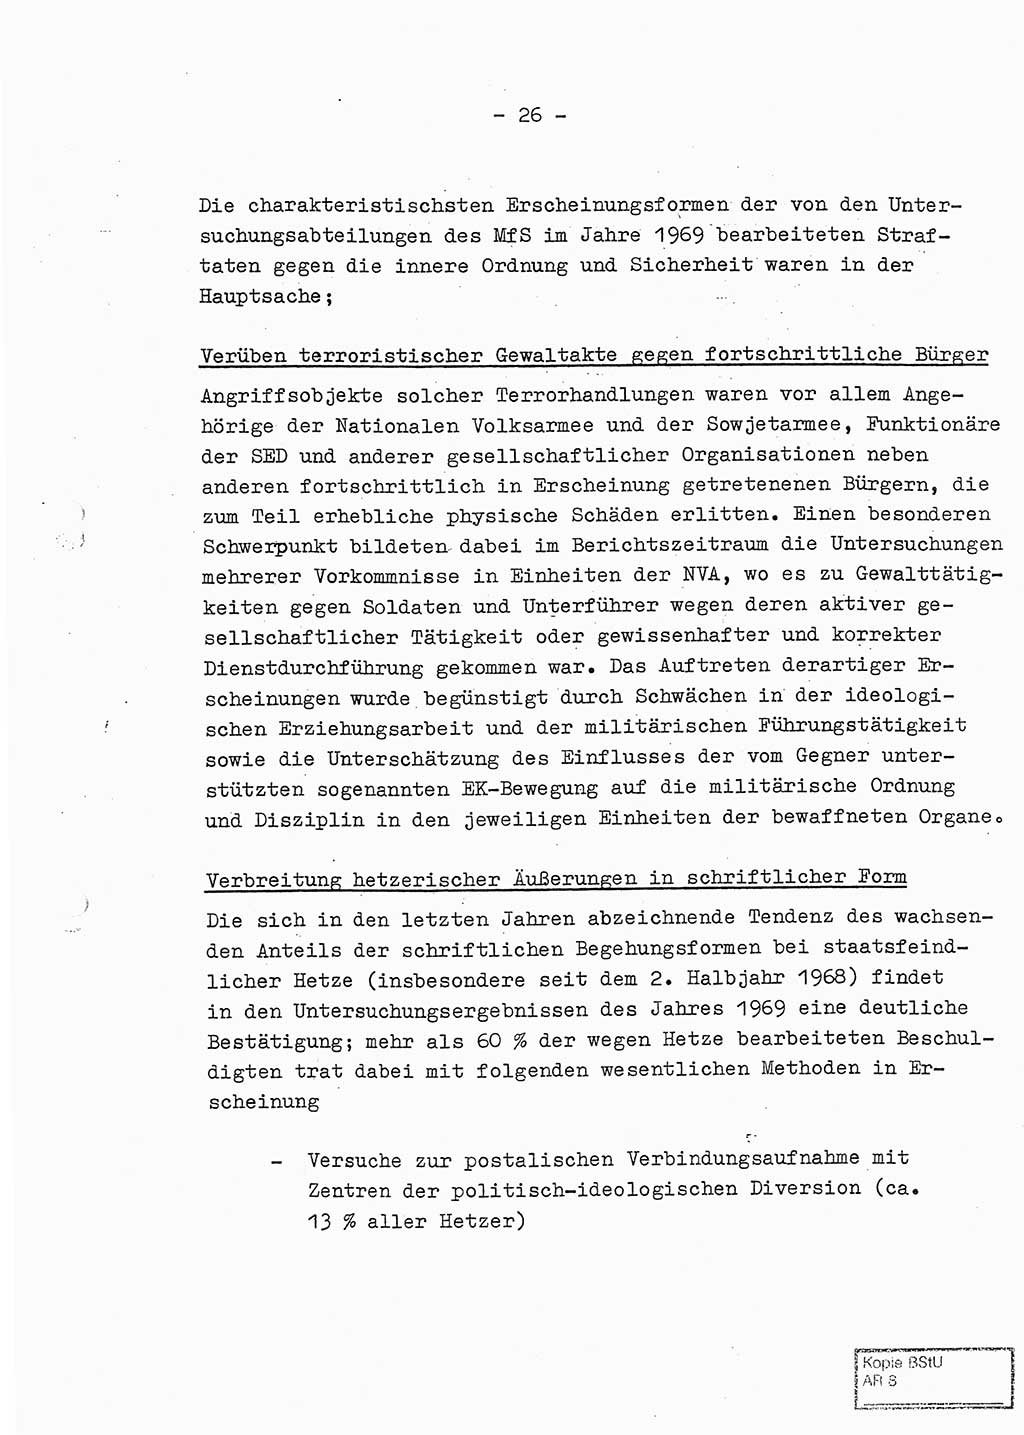 Jahresbericht der Hauptabteilung (HA) Ⅸ 1969 des Ministeriums für Staatssicherheit (MfS) der Deutschen Demokratischen Republik (DDR), Berlin 1970, Seite 26 (J.-Ber. MfS DDR HA Ⅸ /69 1970, S. 26)